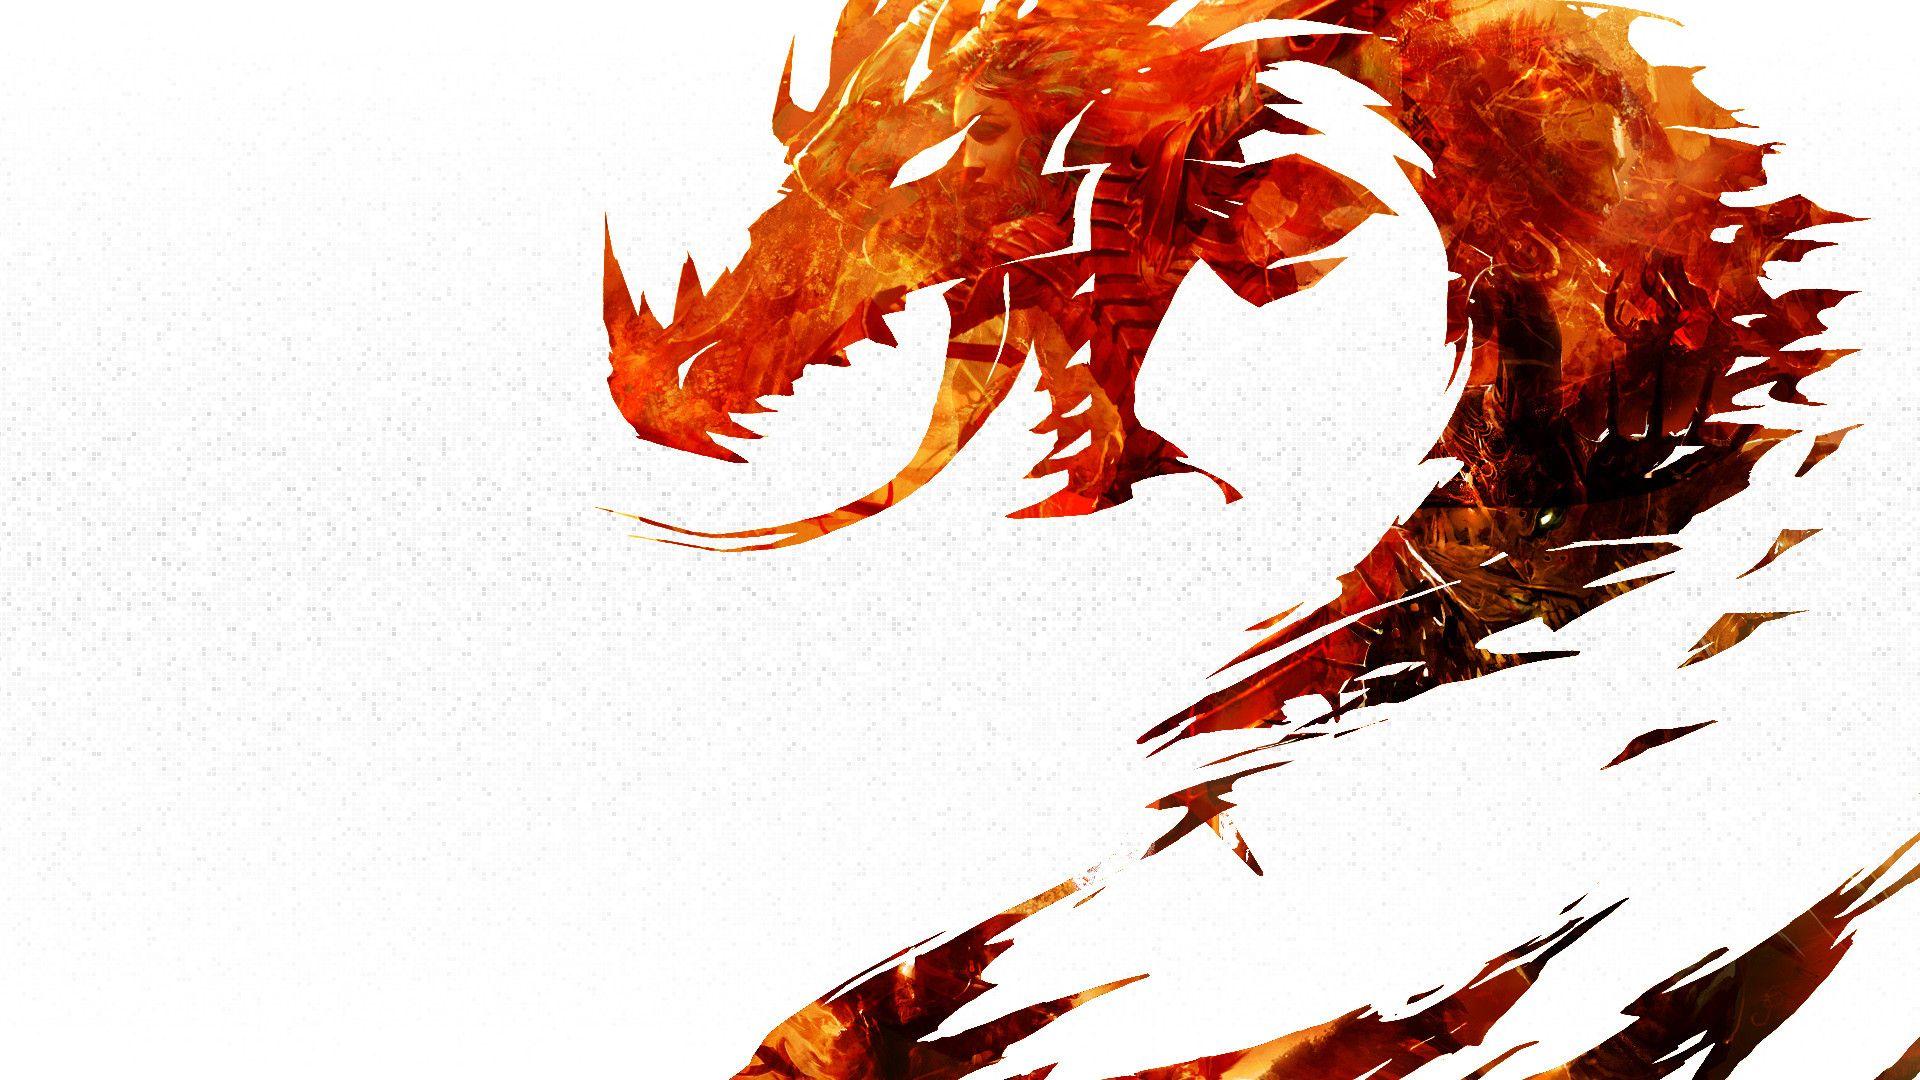 Red Dragon Gaming Wallpaper